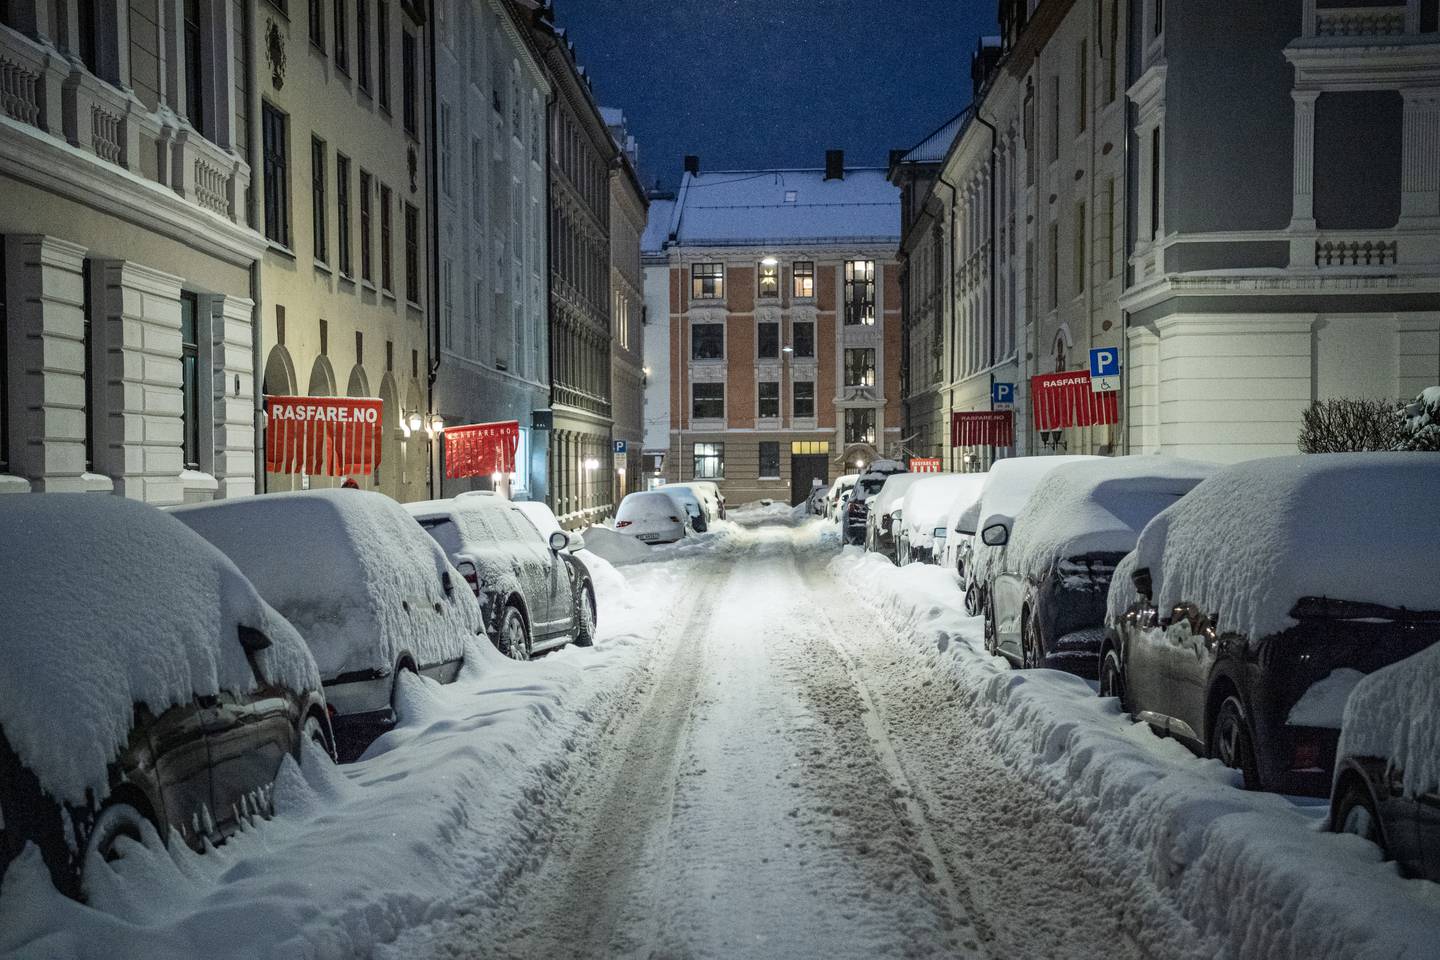 Bilene i Oslo var lørdag kveld dekket av snø etter det kraftige snøværet. Nå er det fare for is når snøen smelter. Foto: Rodrigo Freitas / NTB